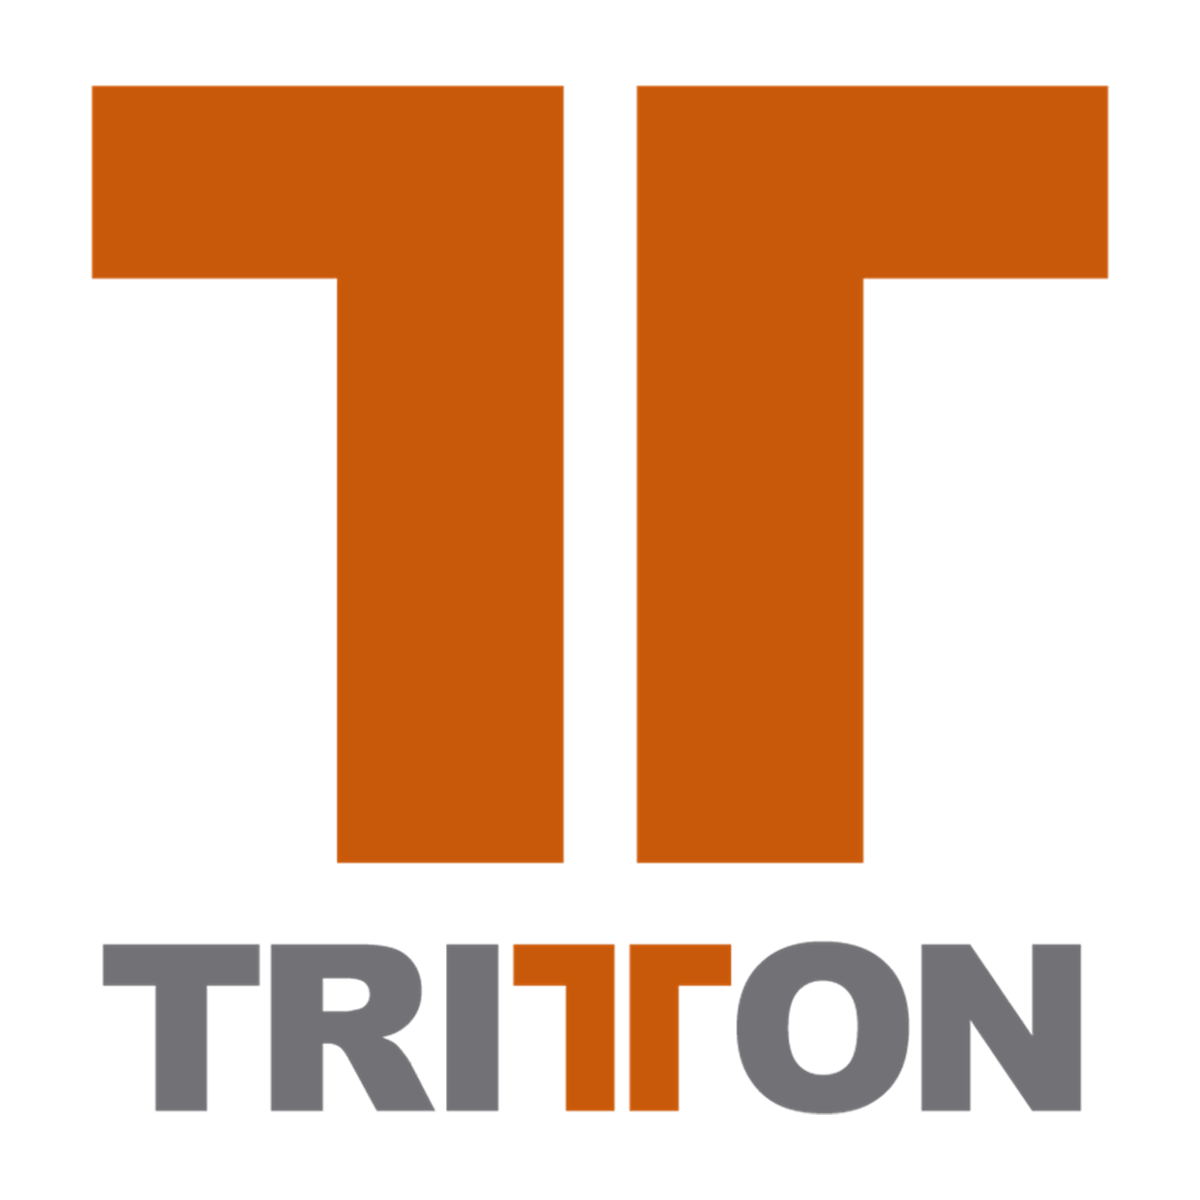 Tritton